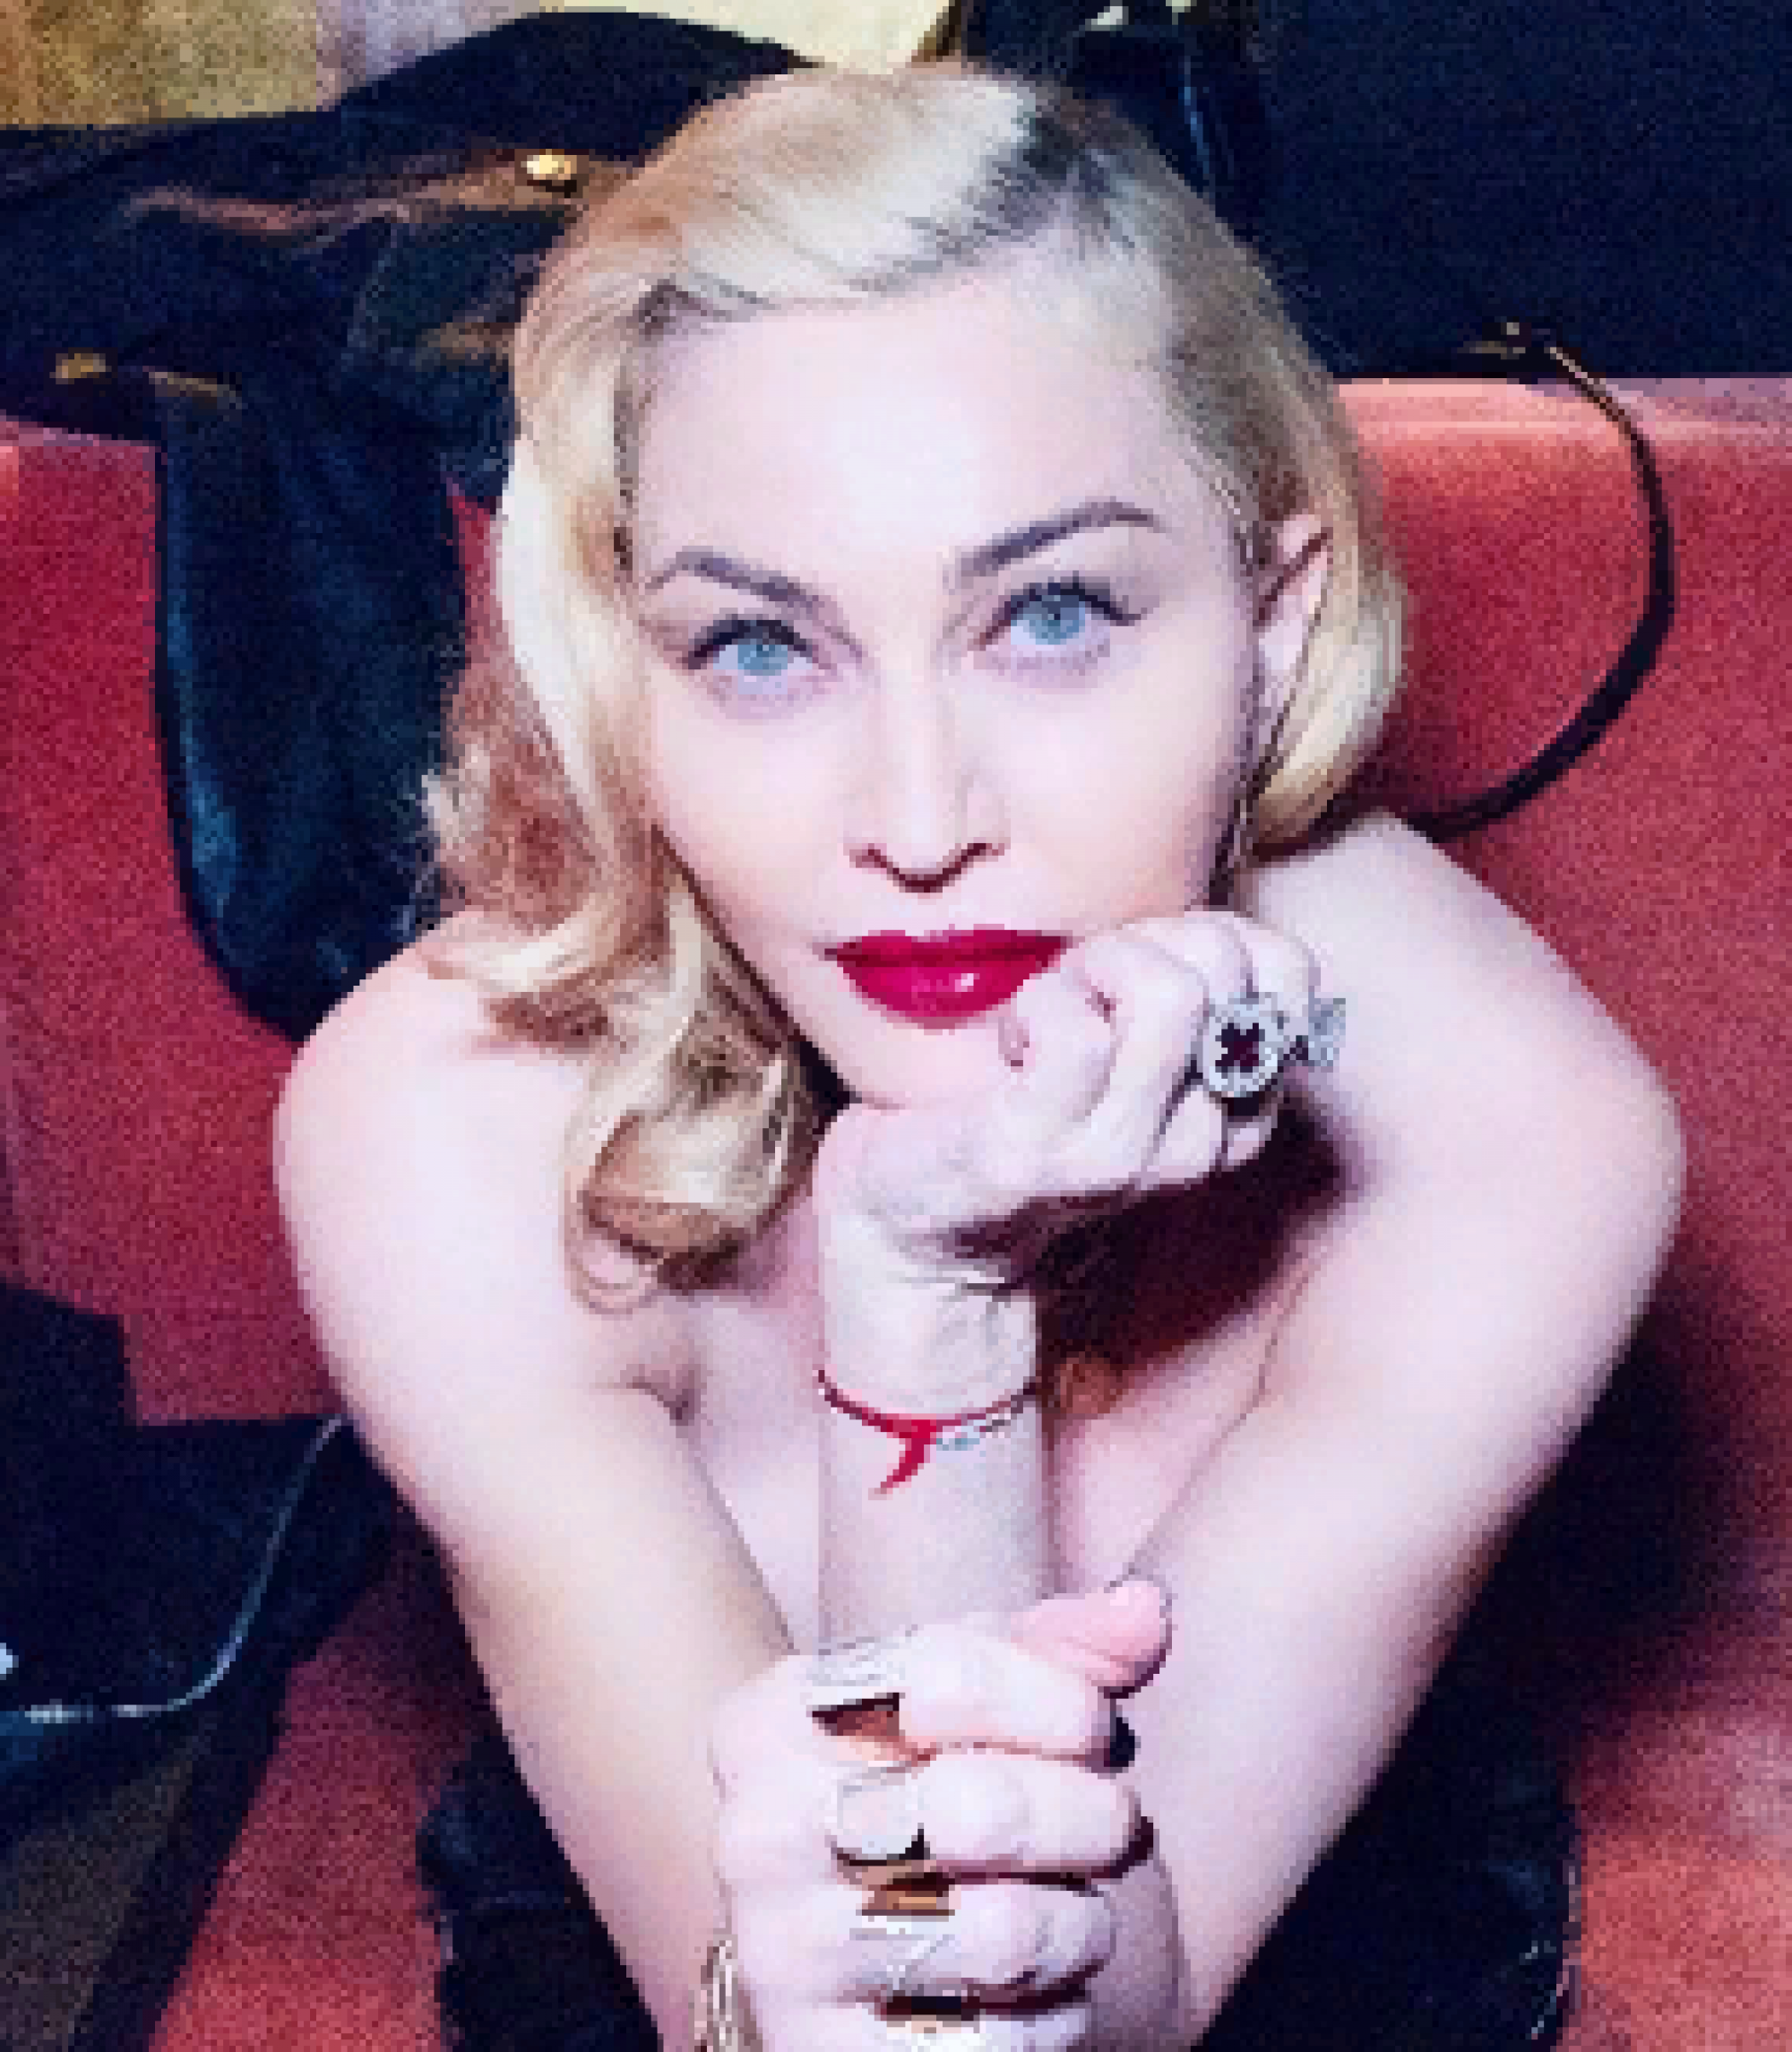 Мадонна удивила своих поклонников фотосессией в нижнем белье